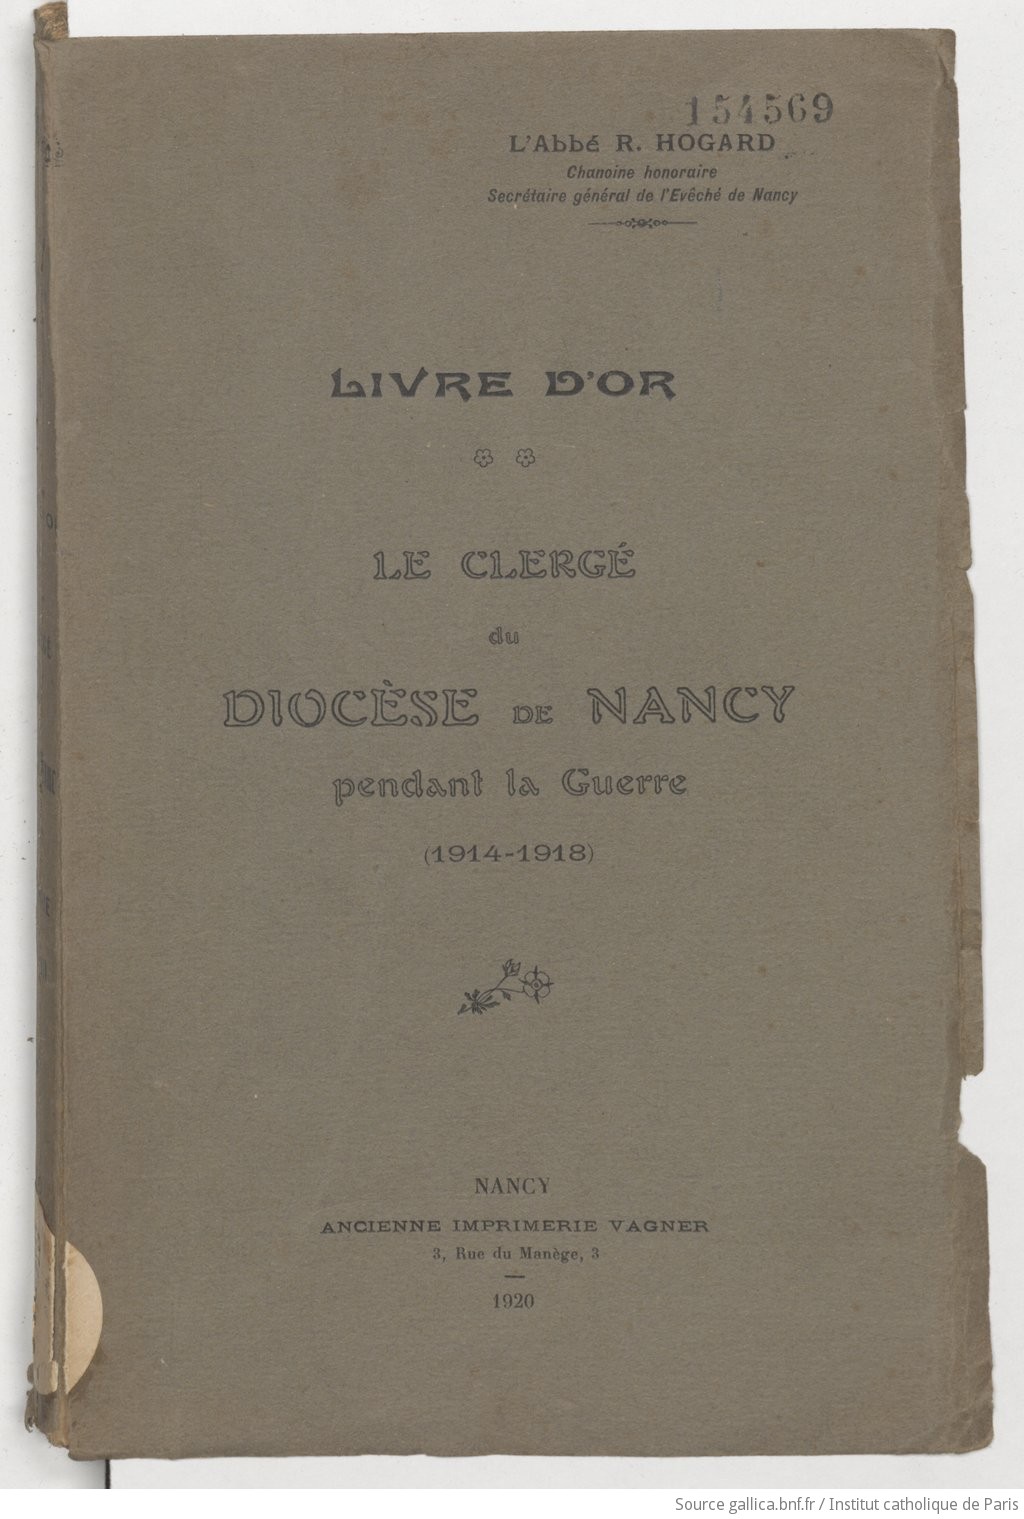 Le clergé du diocèse de Nancy pendant la guerre 1914-1918 : Livre d'or / l'abbé R. Hogard,...